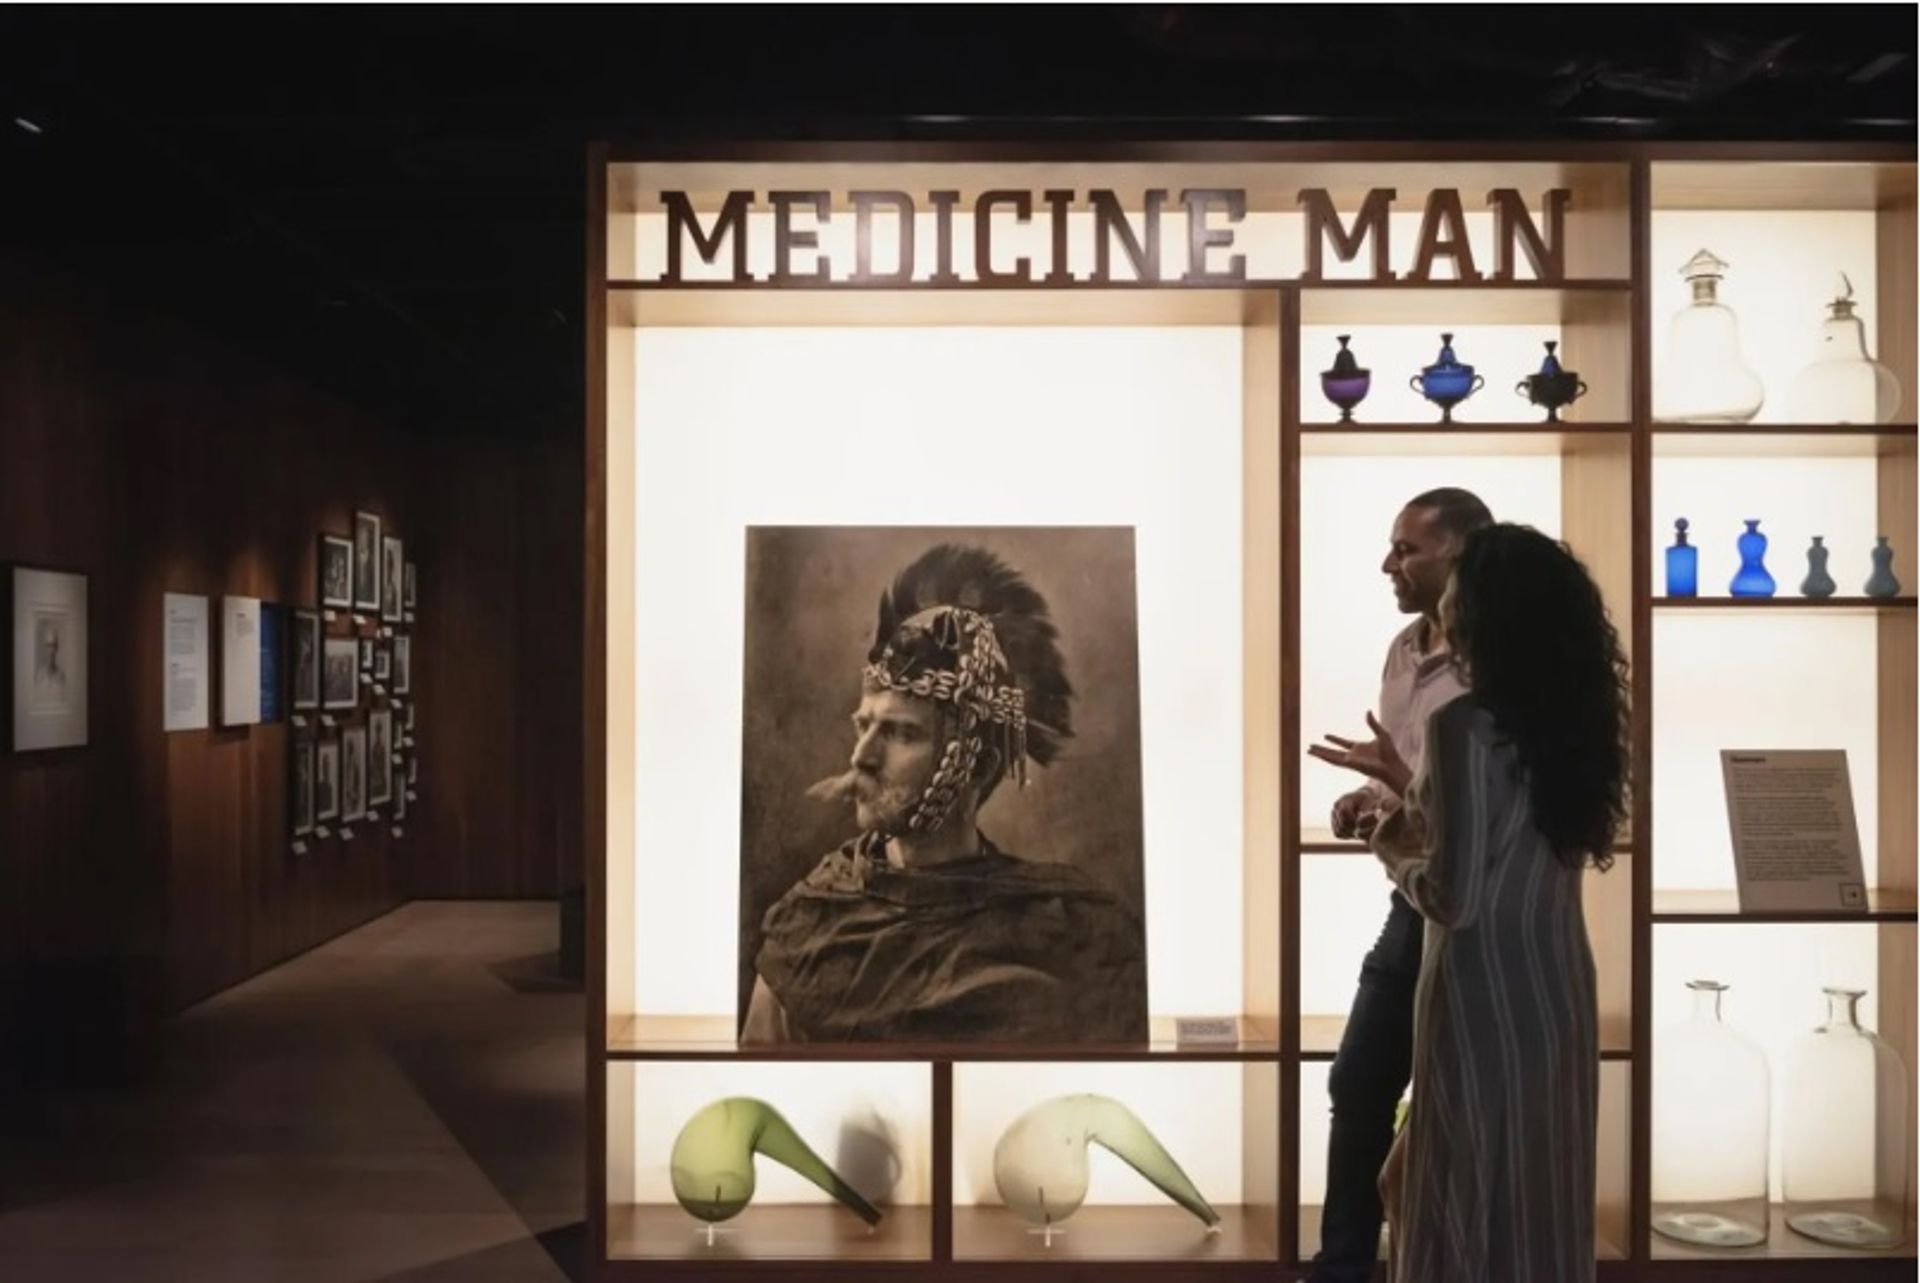 תצוגת Medicine Man ב-Wellcome Collection בלונדון נסגרה לקהל ב-27 בנובמבר 2022

© אוסף וולקאם